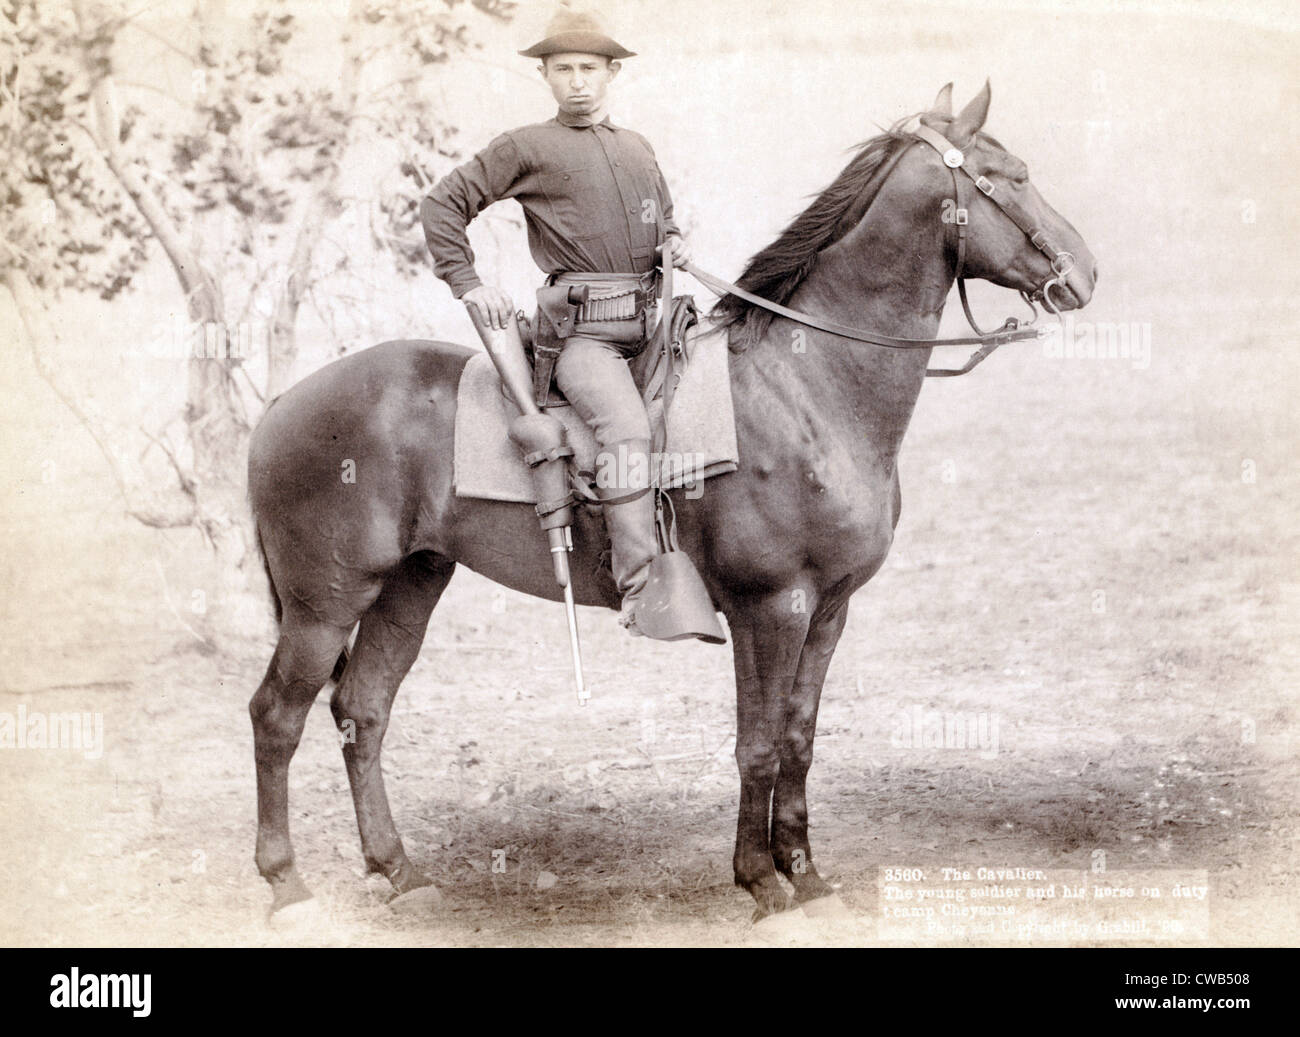 Salvaje Oeste. El Cavalier. El joven soldado y a su caballo de guardia en el campamento, Cheyenne. Foto por John C. Grabill, 1890 Foto de stock